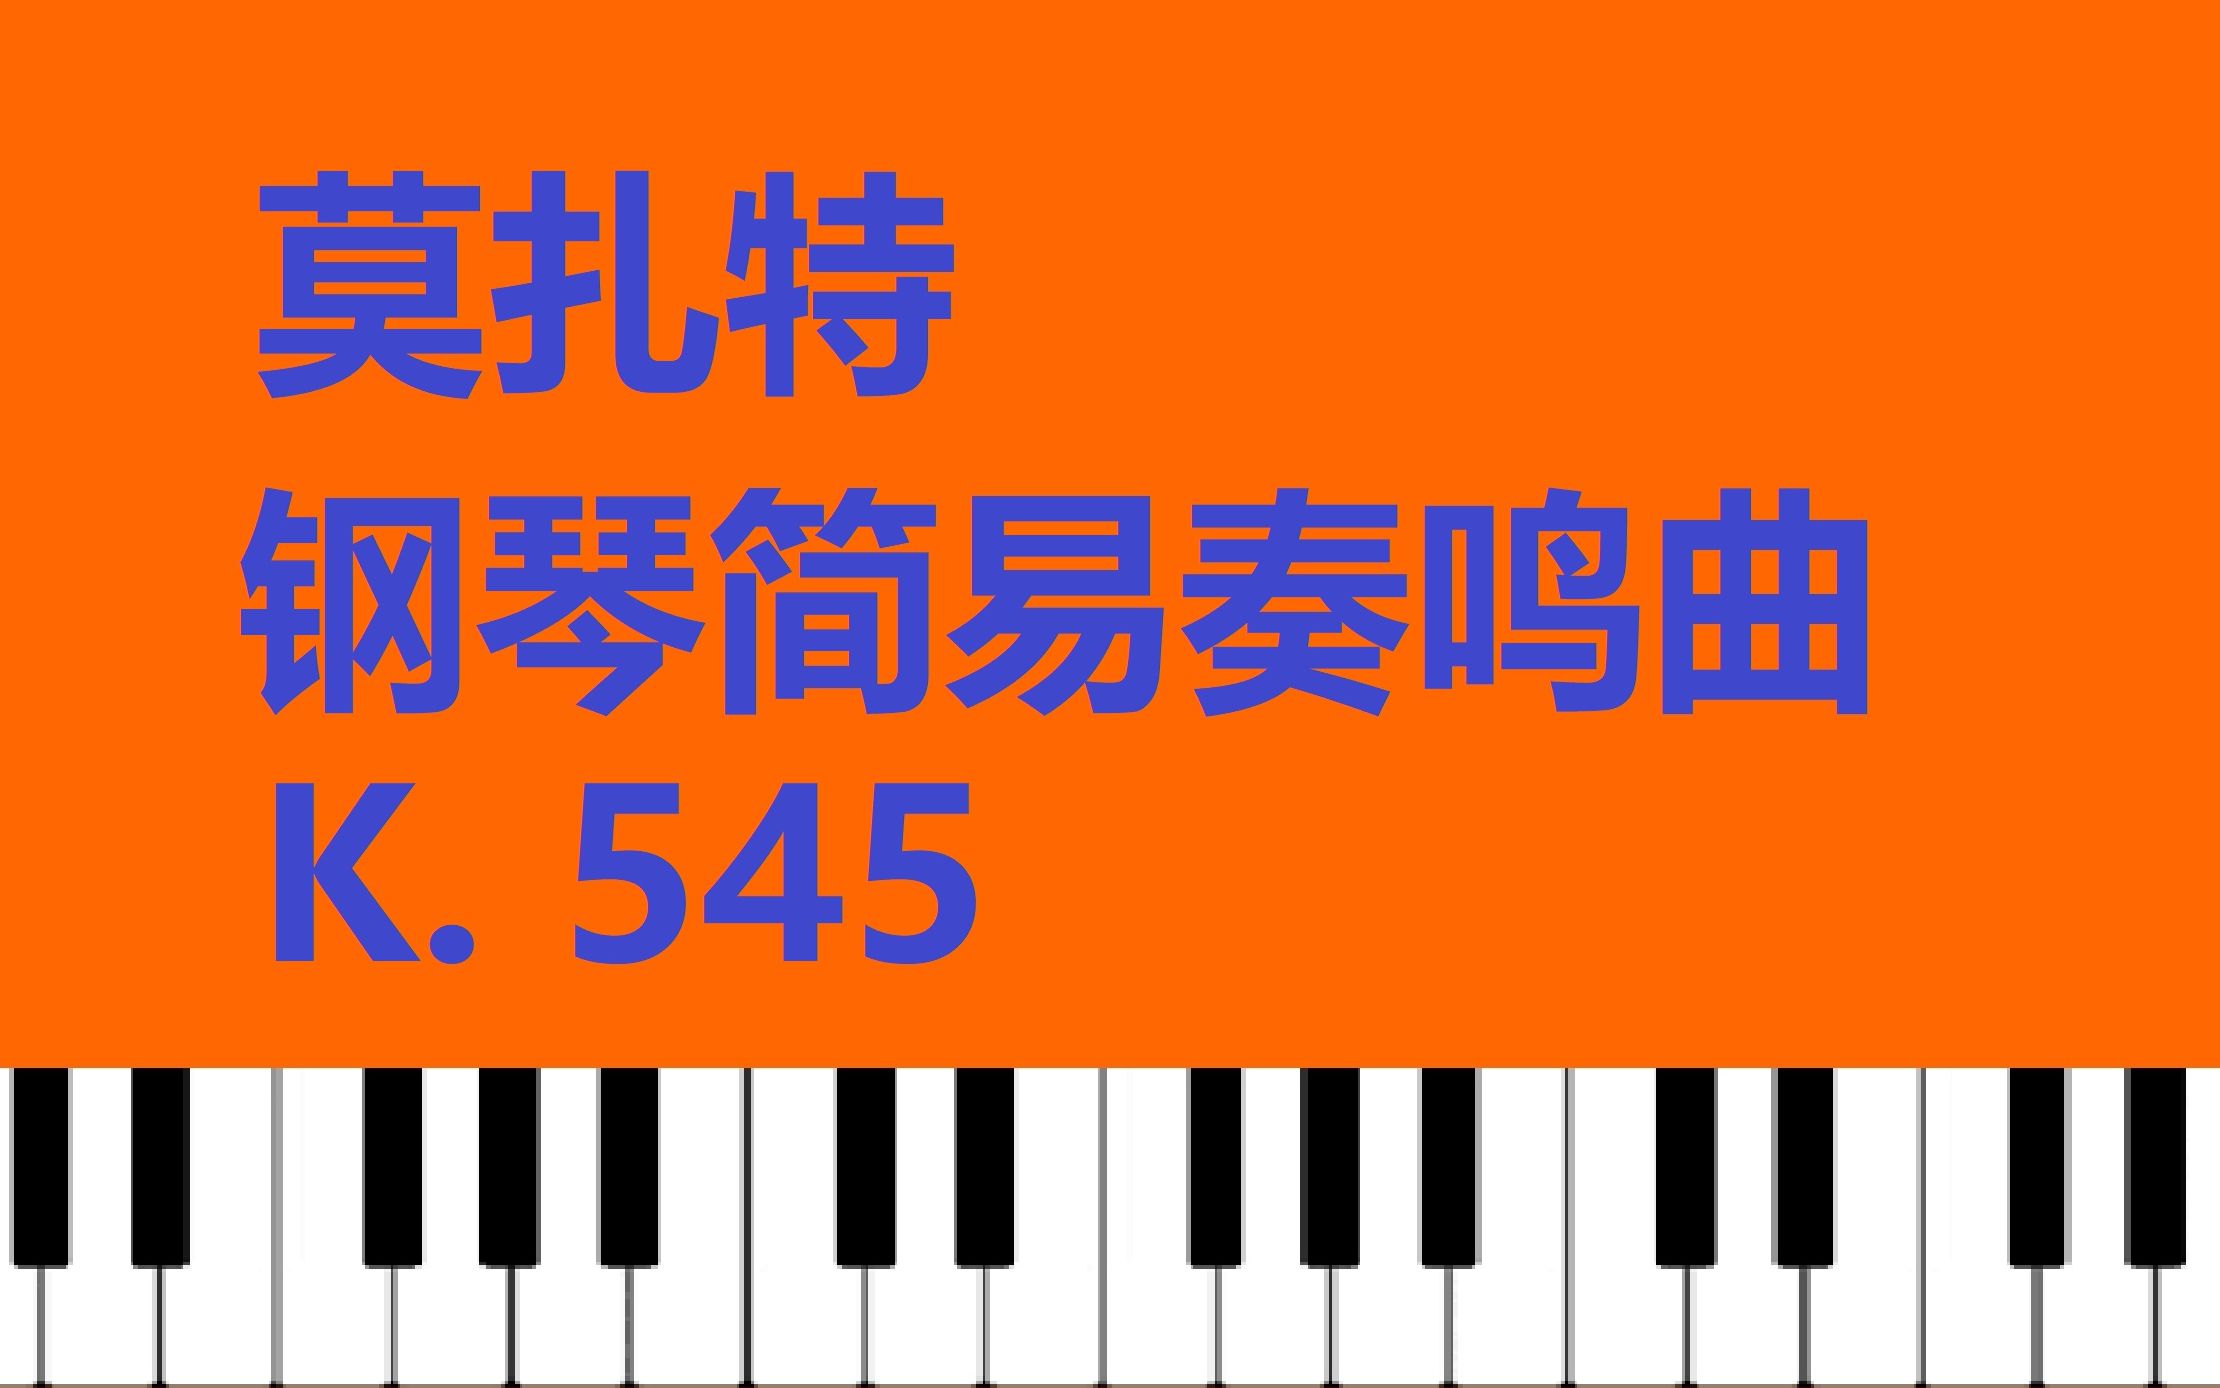 [图]【钢琴】莫扎特 钢琴奏鸣曲 K.545 【小安要弹琴】/ Mozart Piano Sonata Facile, K. 545